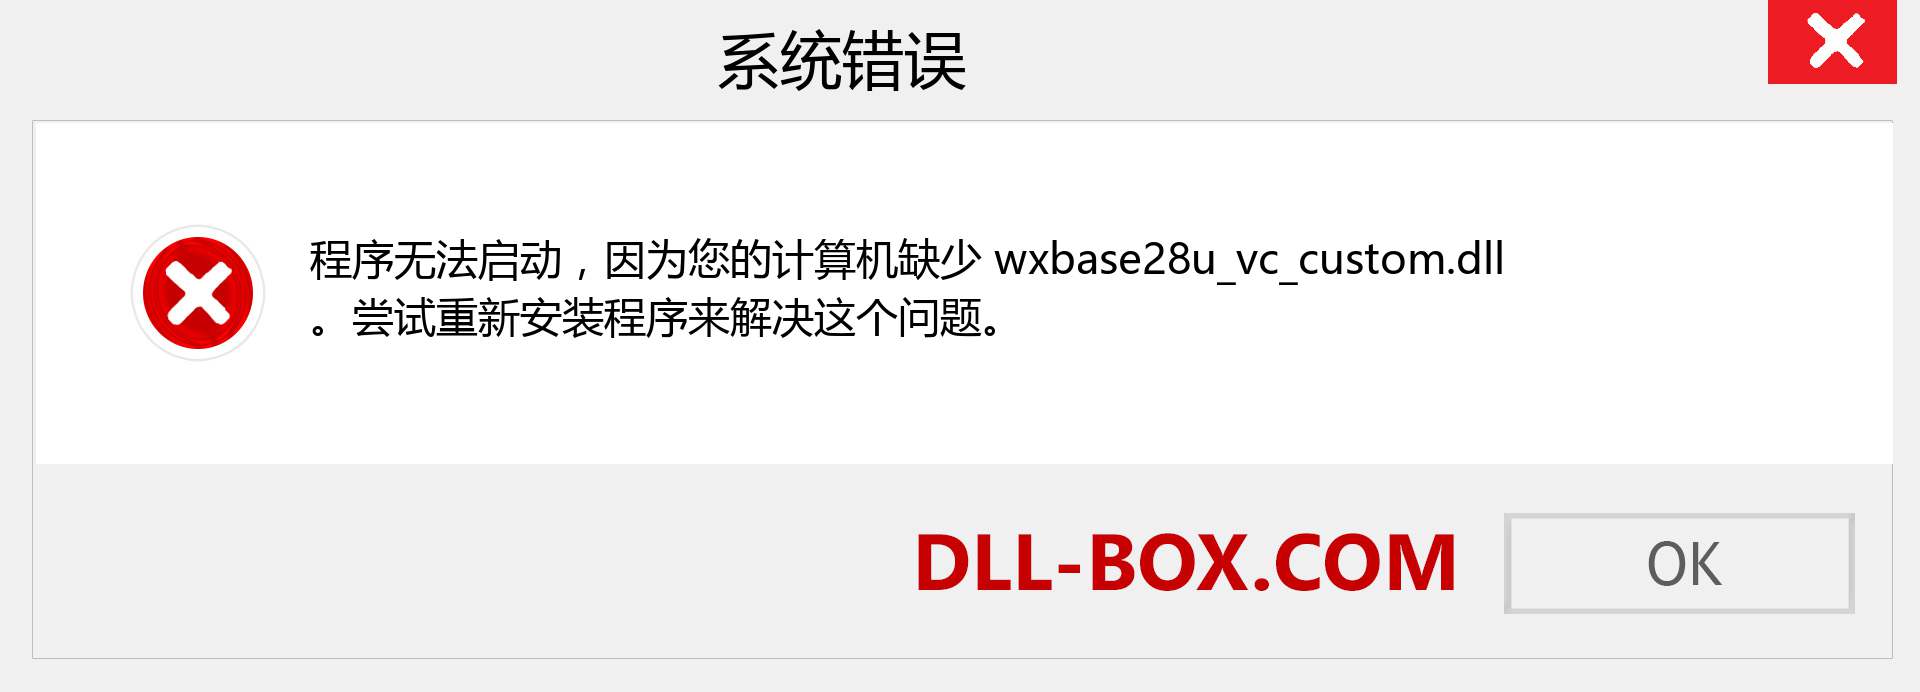 wxbase28u_vc_custom.dll 文件丢失？。 适用于 Windows 7、8、10 的下载 - 修复 Windows、照片、图像上的 wxbase28u_vc_custom dll 丢失错误